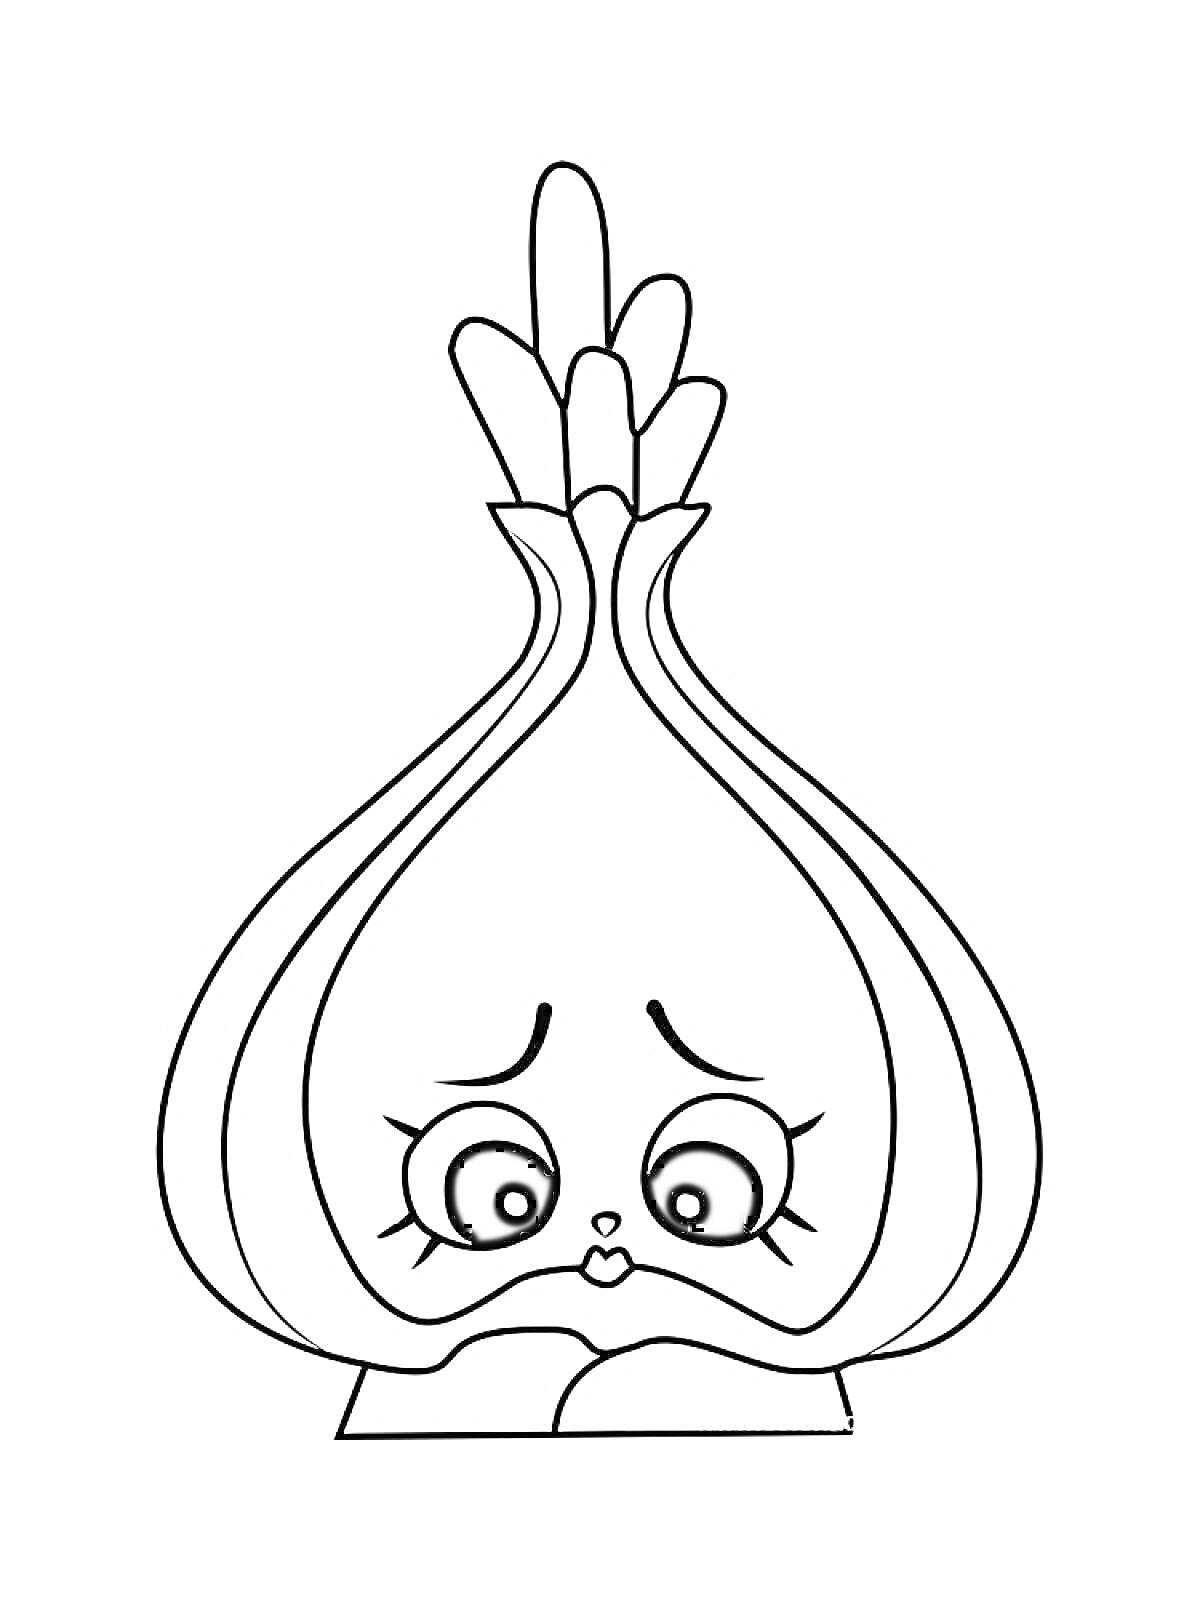 Раскраска Луковица с грустным лицом из серии Шопкинс